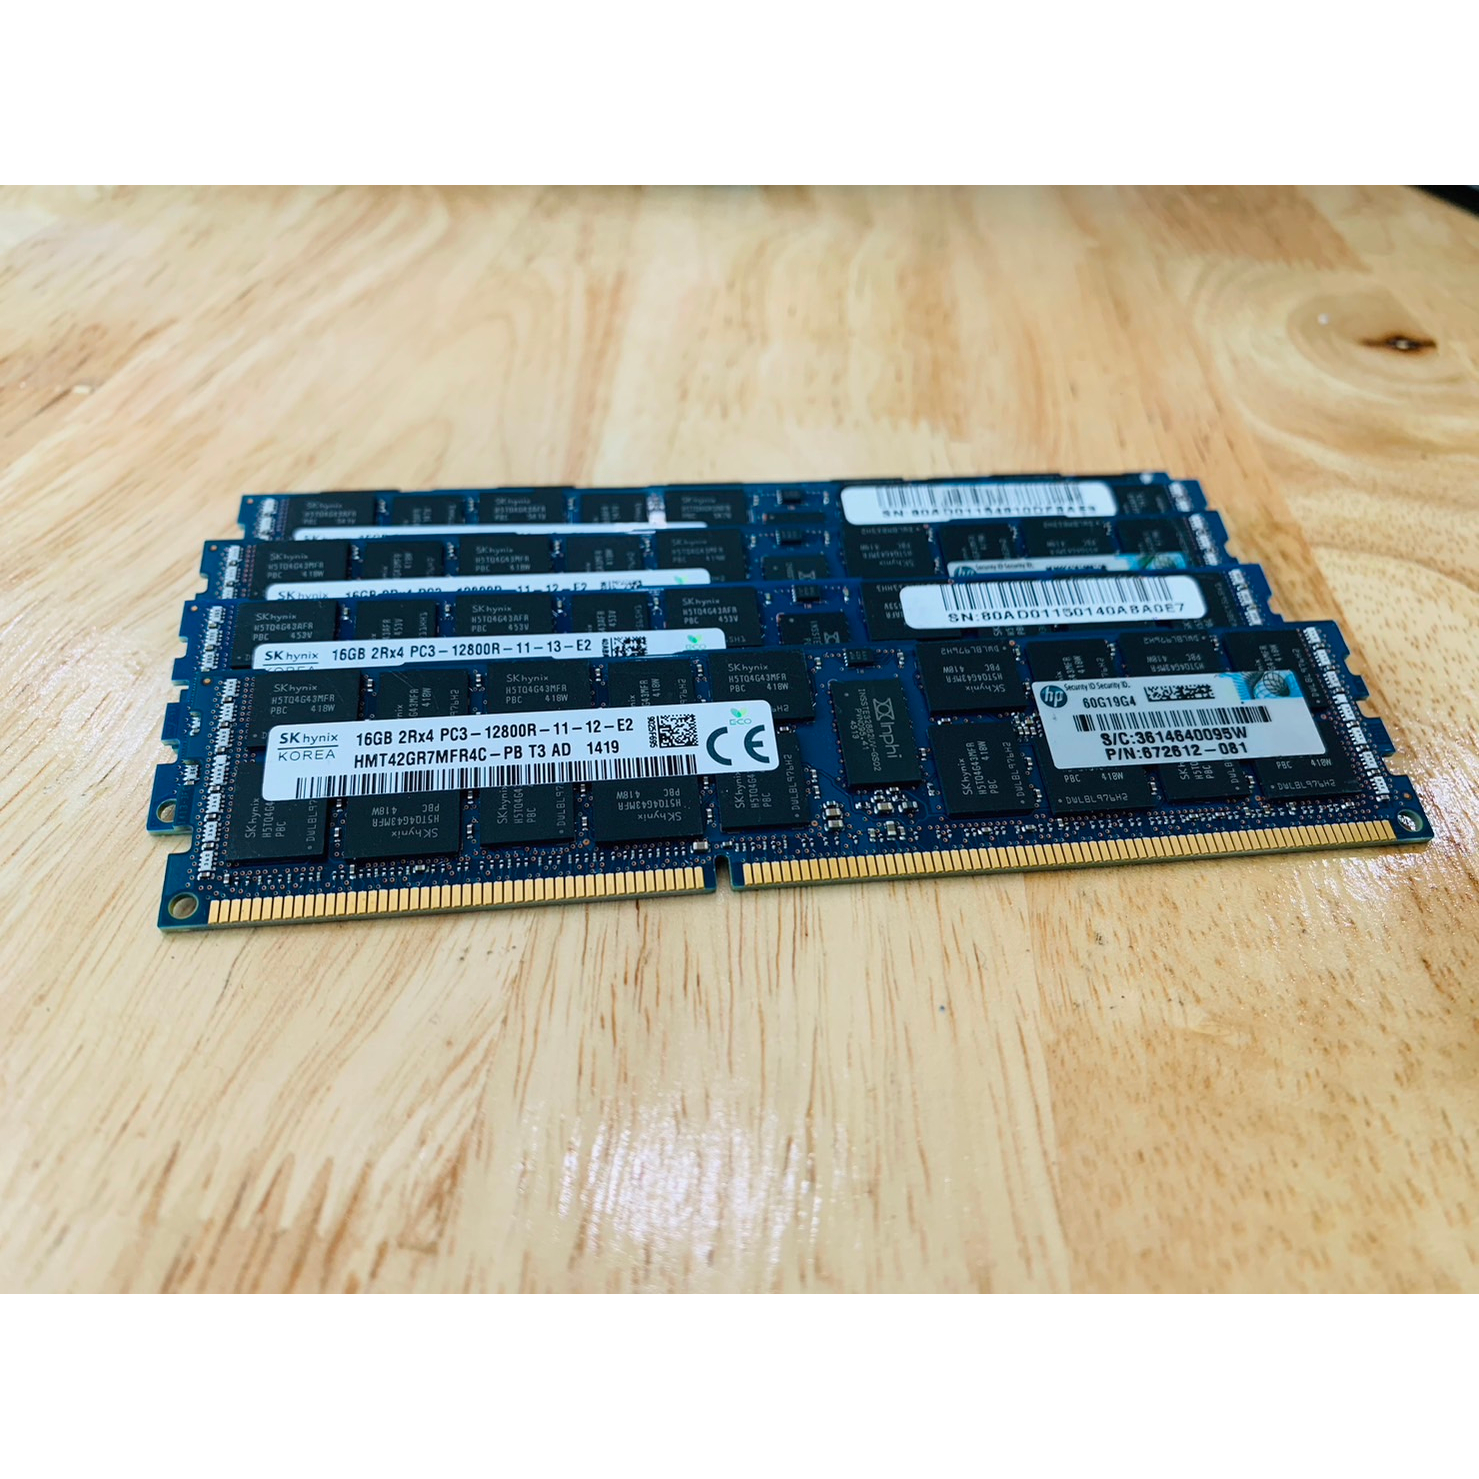 แรม Ram Server Ram ECC DDR3 / Skhynix 16GB 2Rx4 PC3-12800R สินค้ามีประกัน